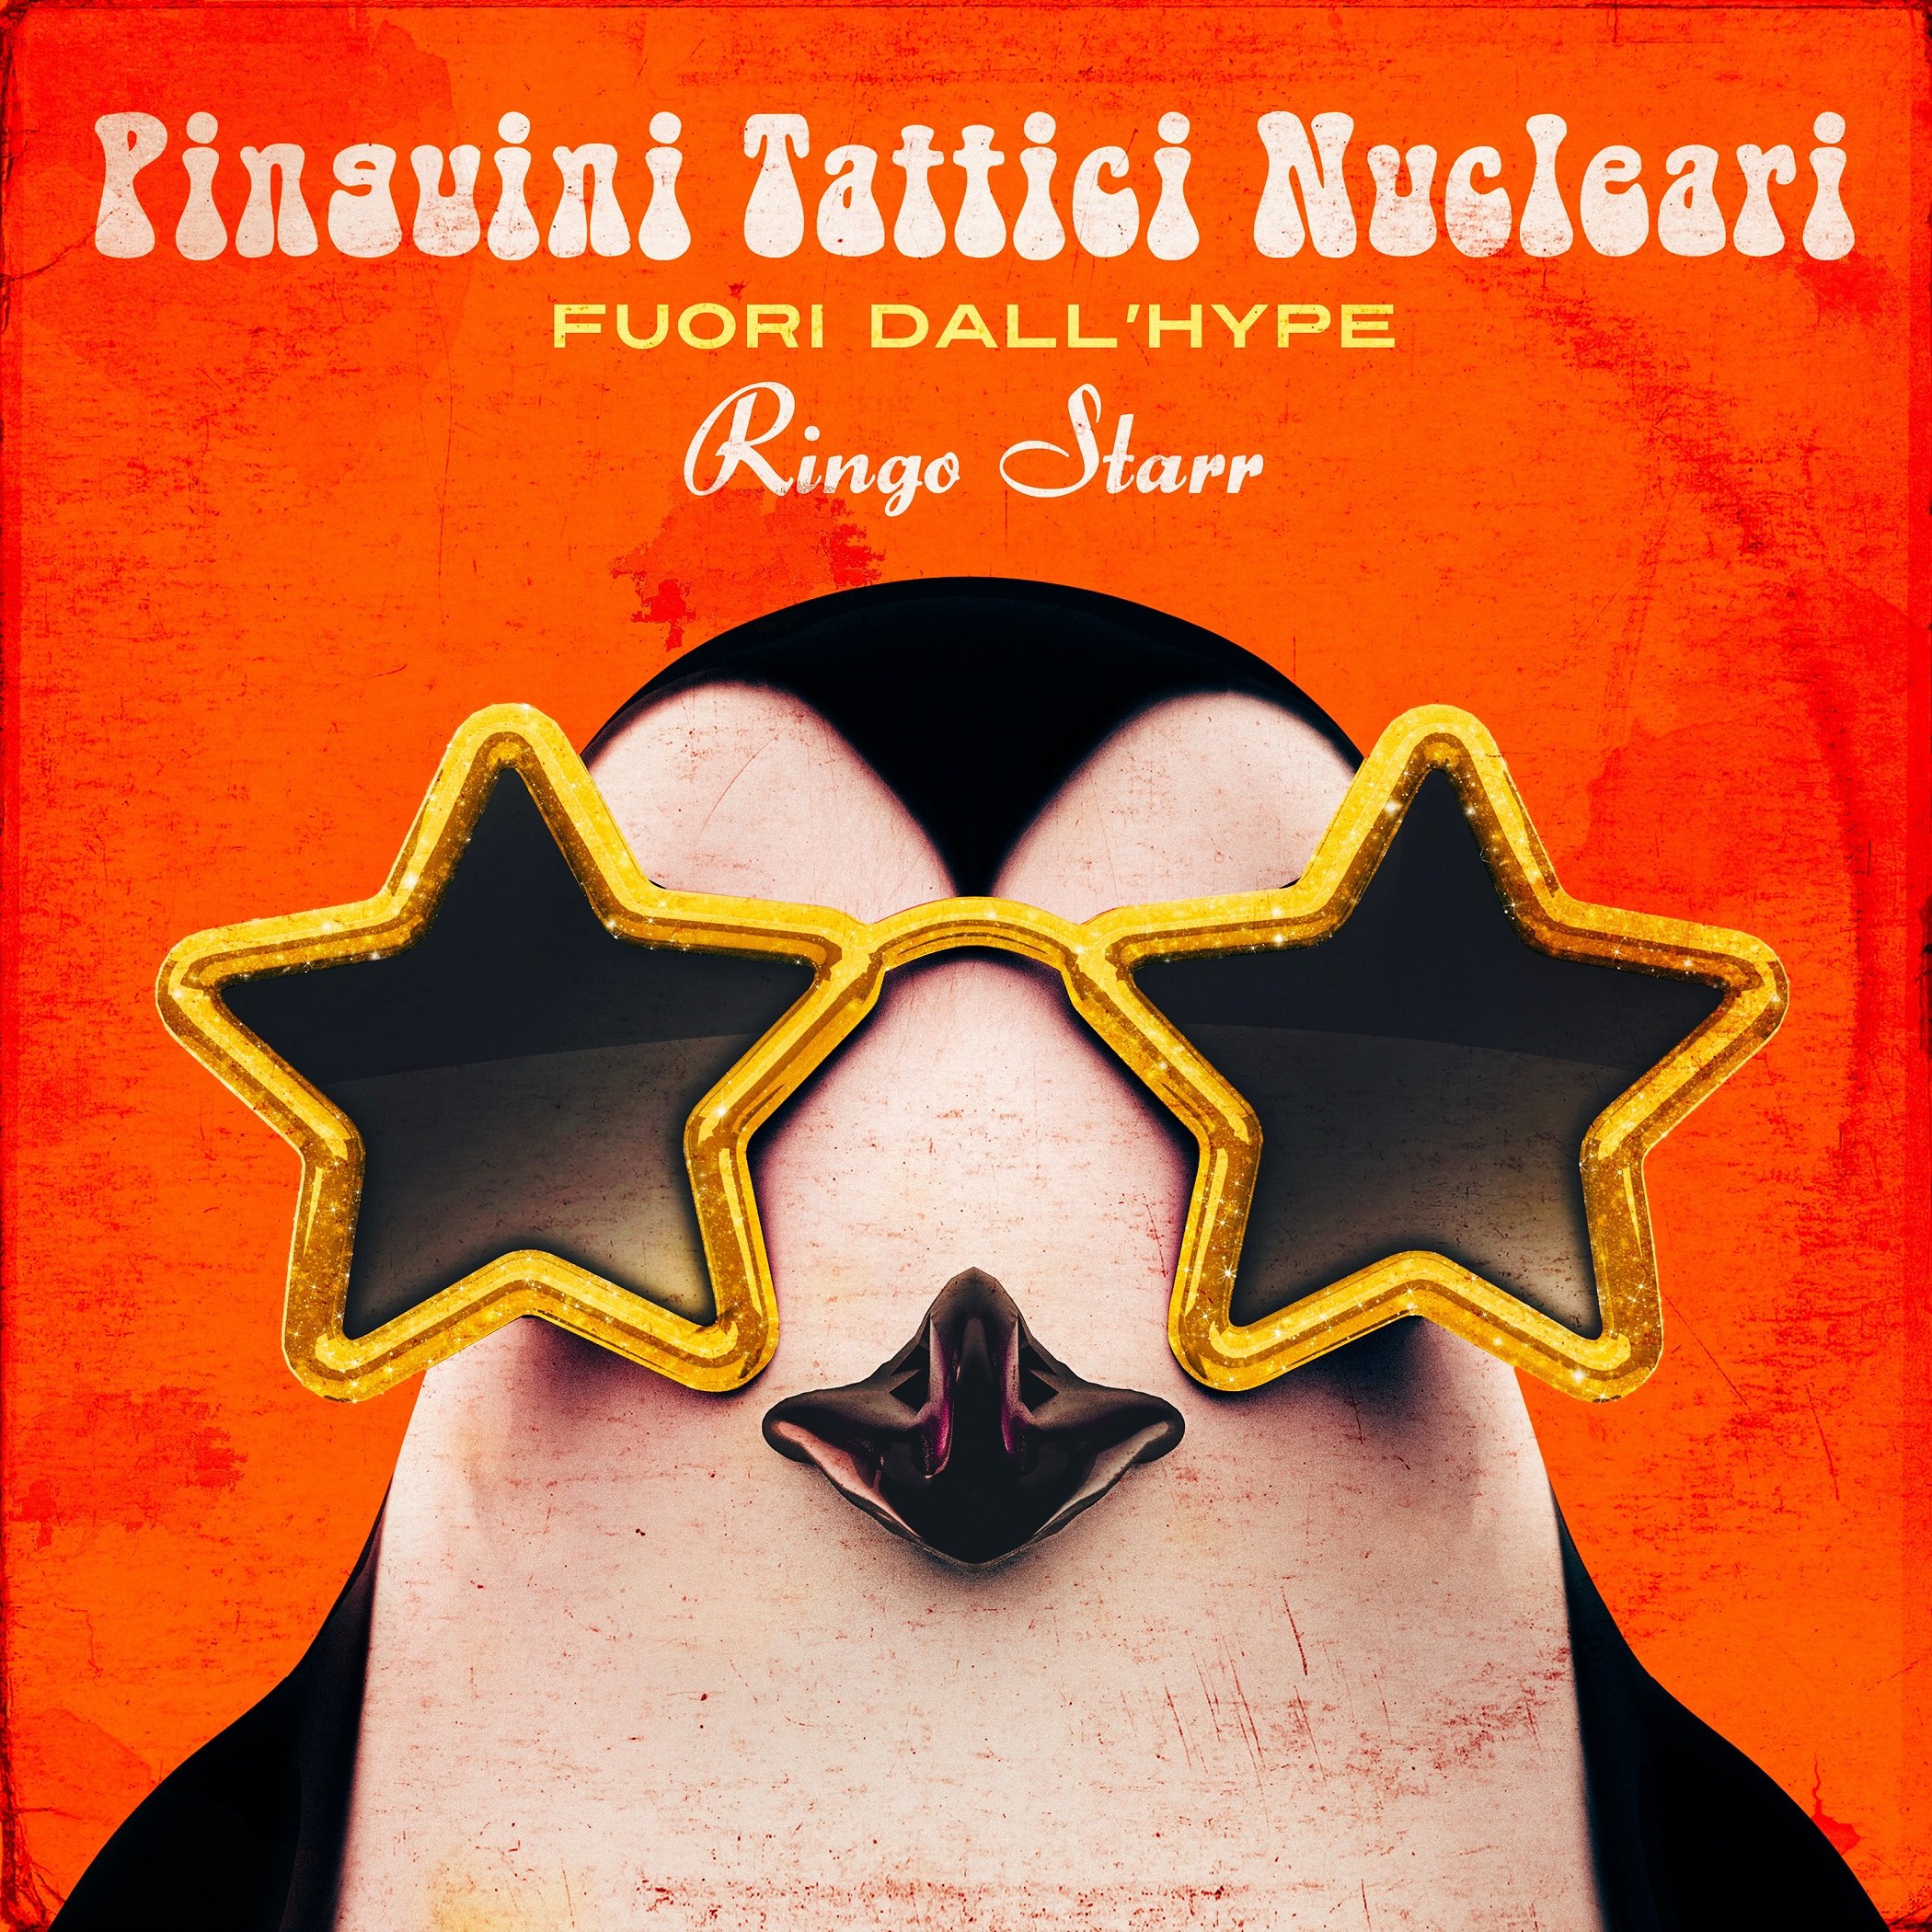 Pinguini Tattici Nucleari al Festival di Sanremo con il nuovo disco